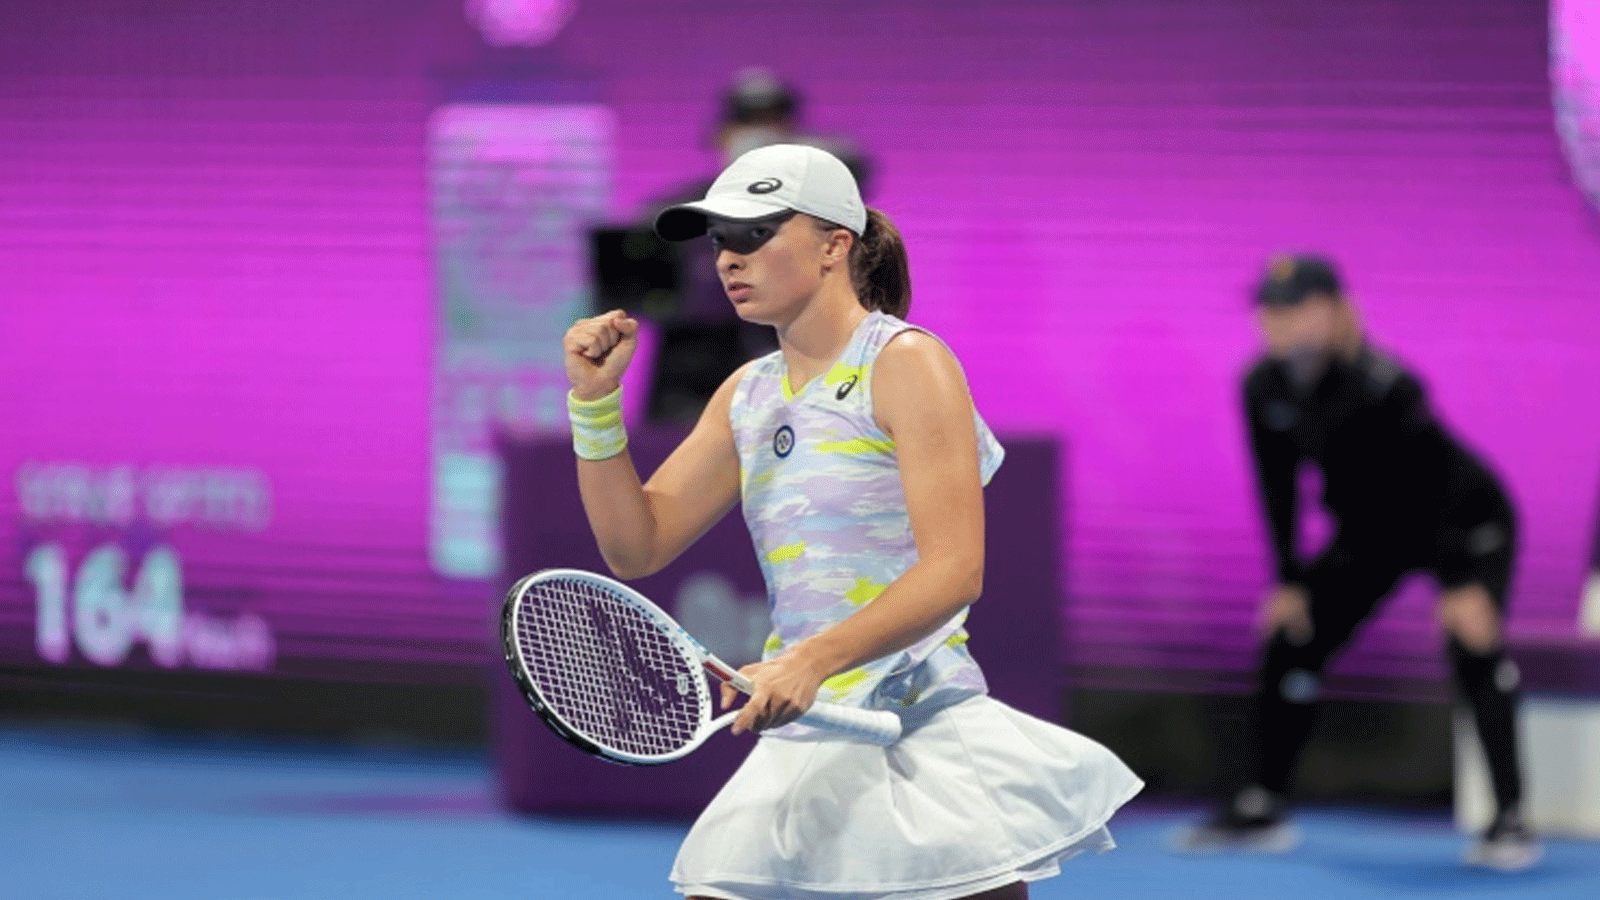 البولندية إيغا شفيونتيك تسحق منافستها الإستونية أنيت كونتافيت بفوزها عليها 6-2 و6-صفر في نهائي دورة قطر لكرة المضرب